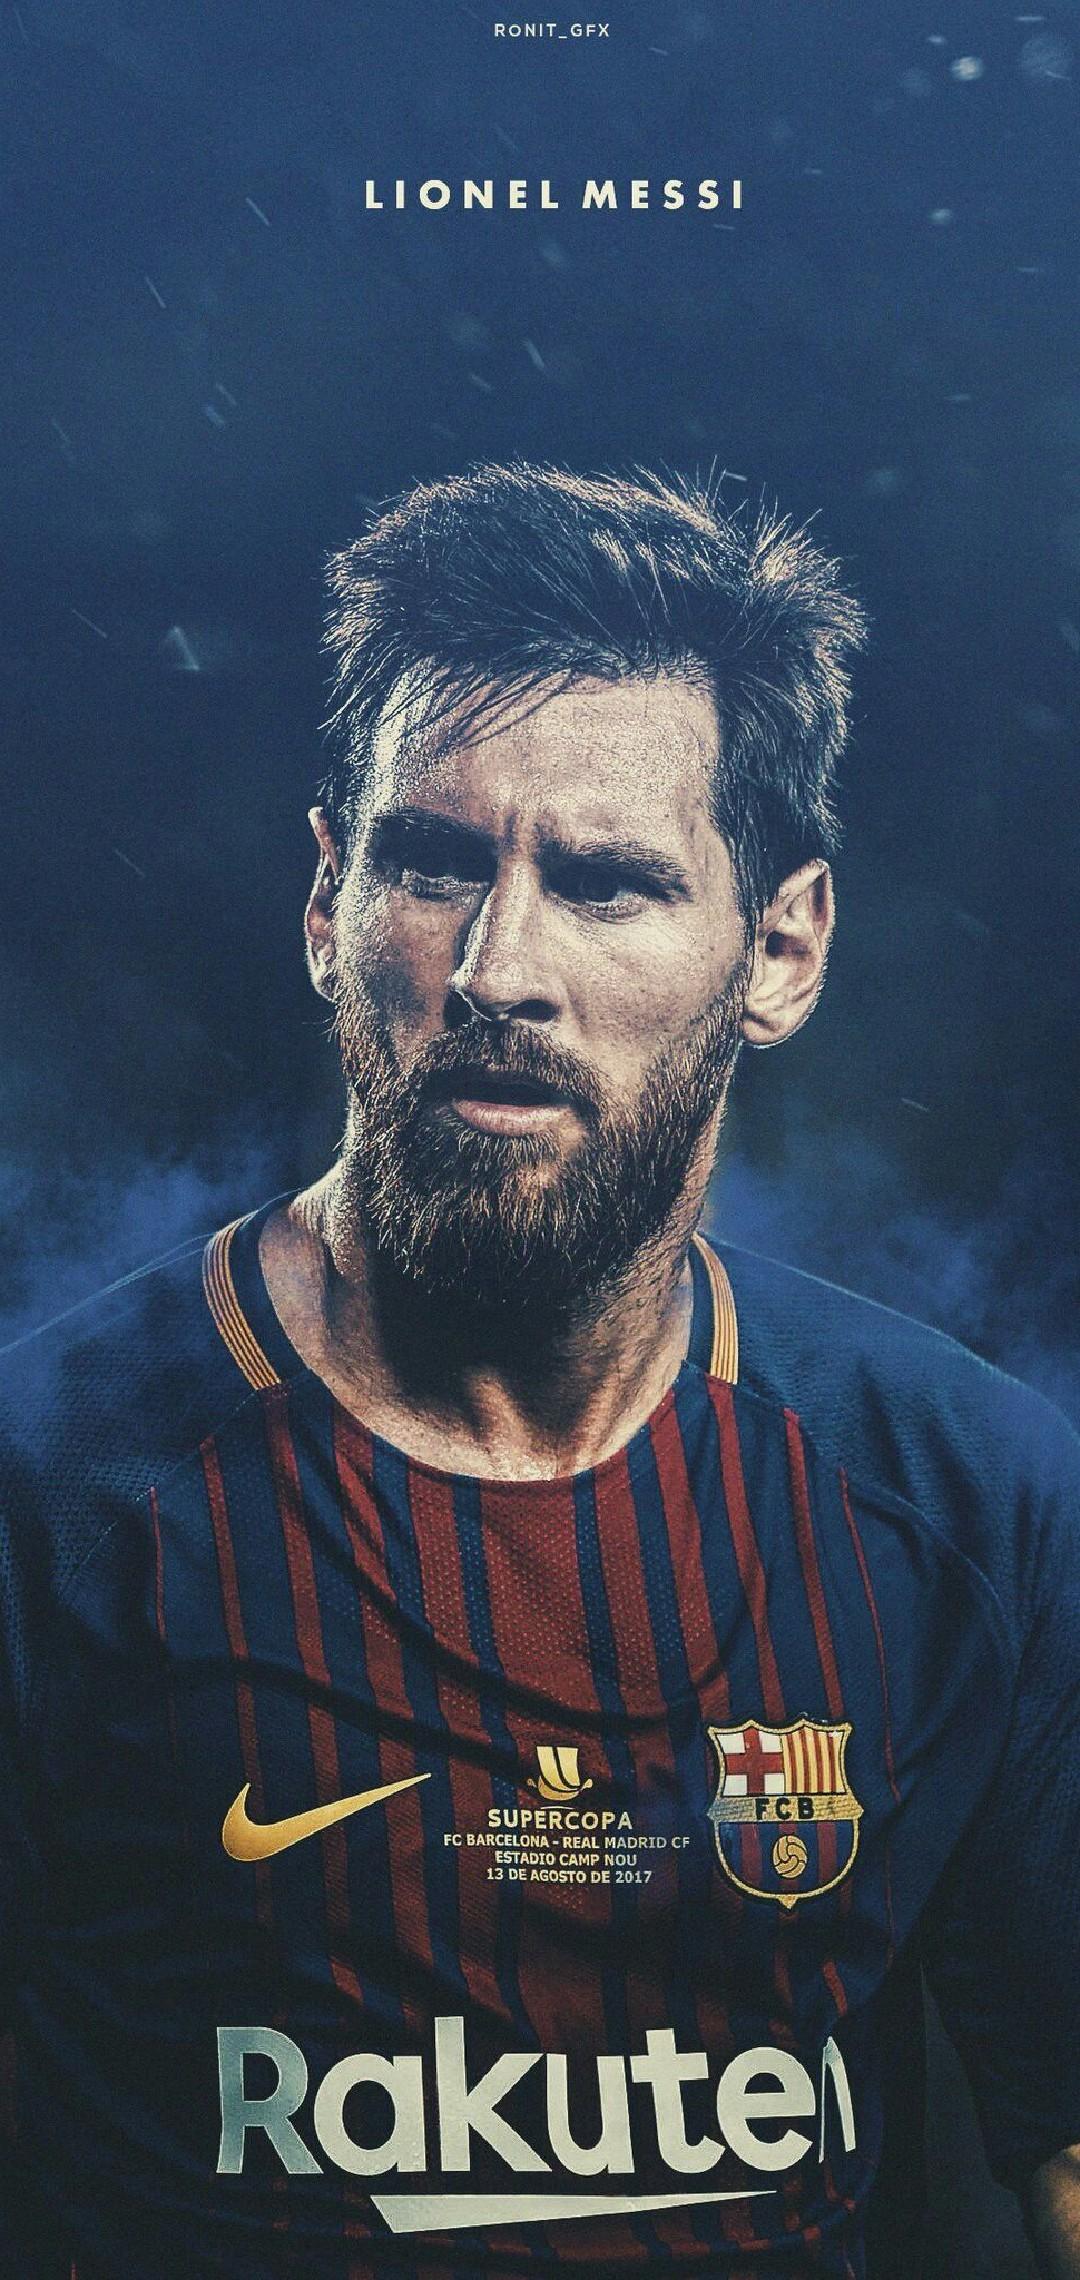 Bức ảnh Messi chân dung đầy tình cảm và sắc nét sẽ là điểm nhấn tuyệt vời cho màn hình của bạn. Xem ngay để trải nghiệm nét đặc biệt của ảnh chân dung này.